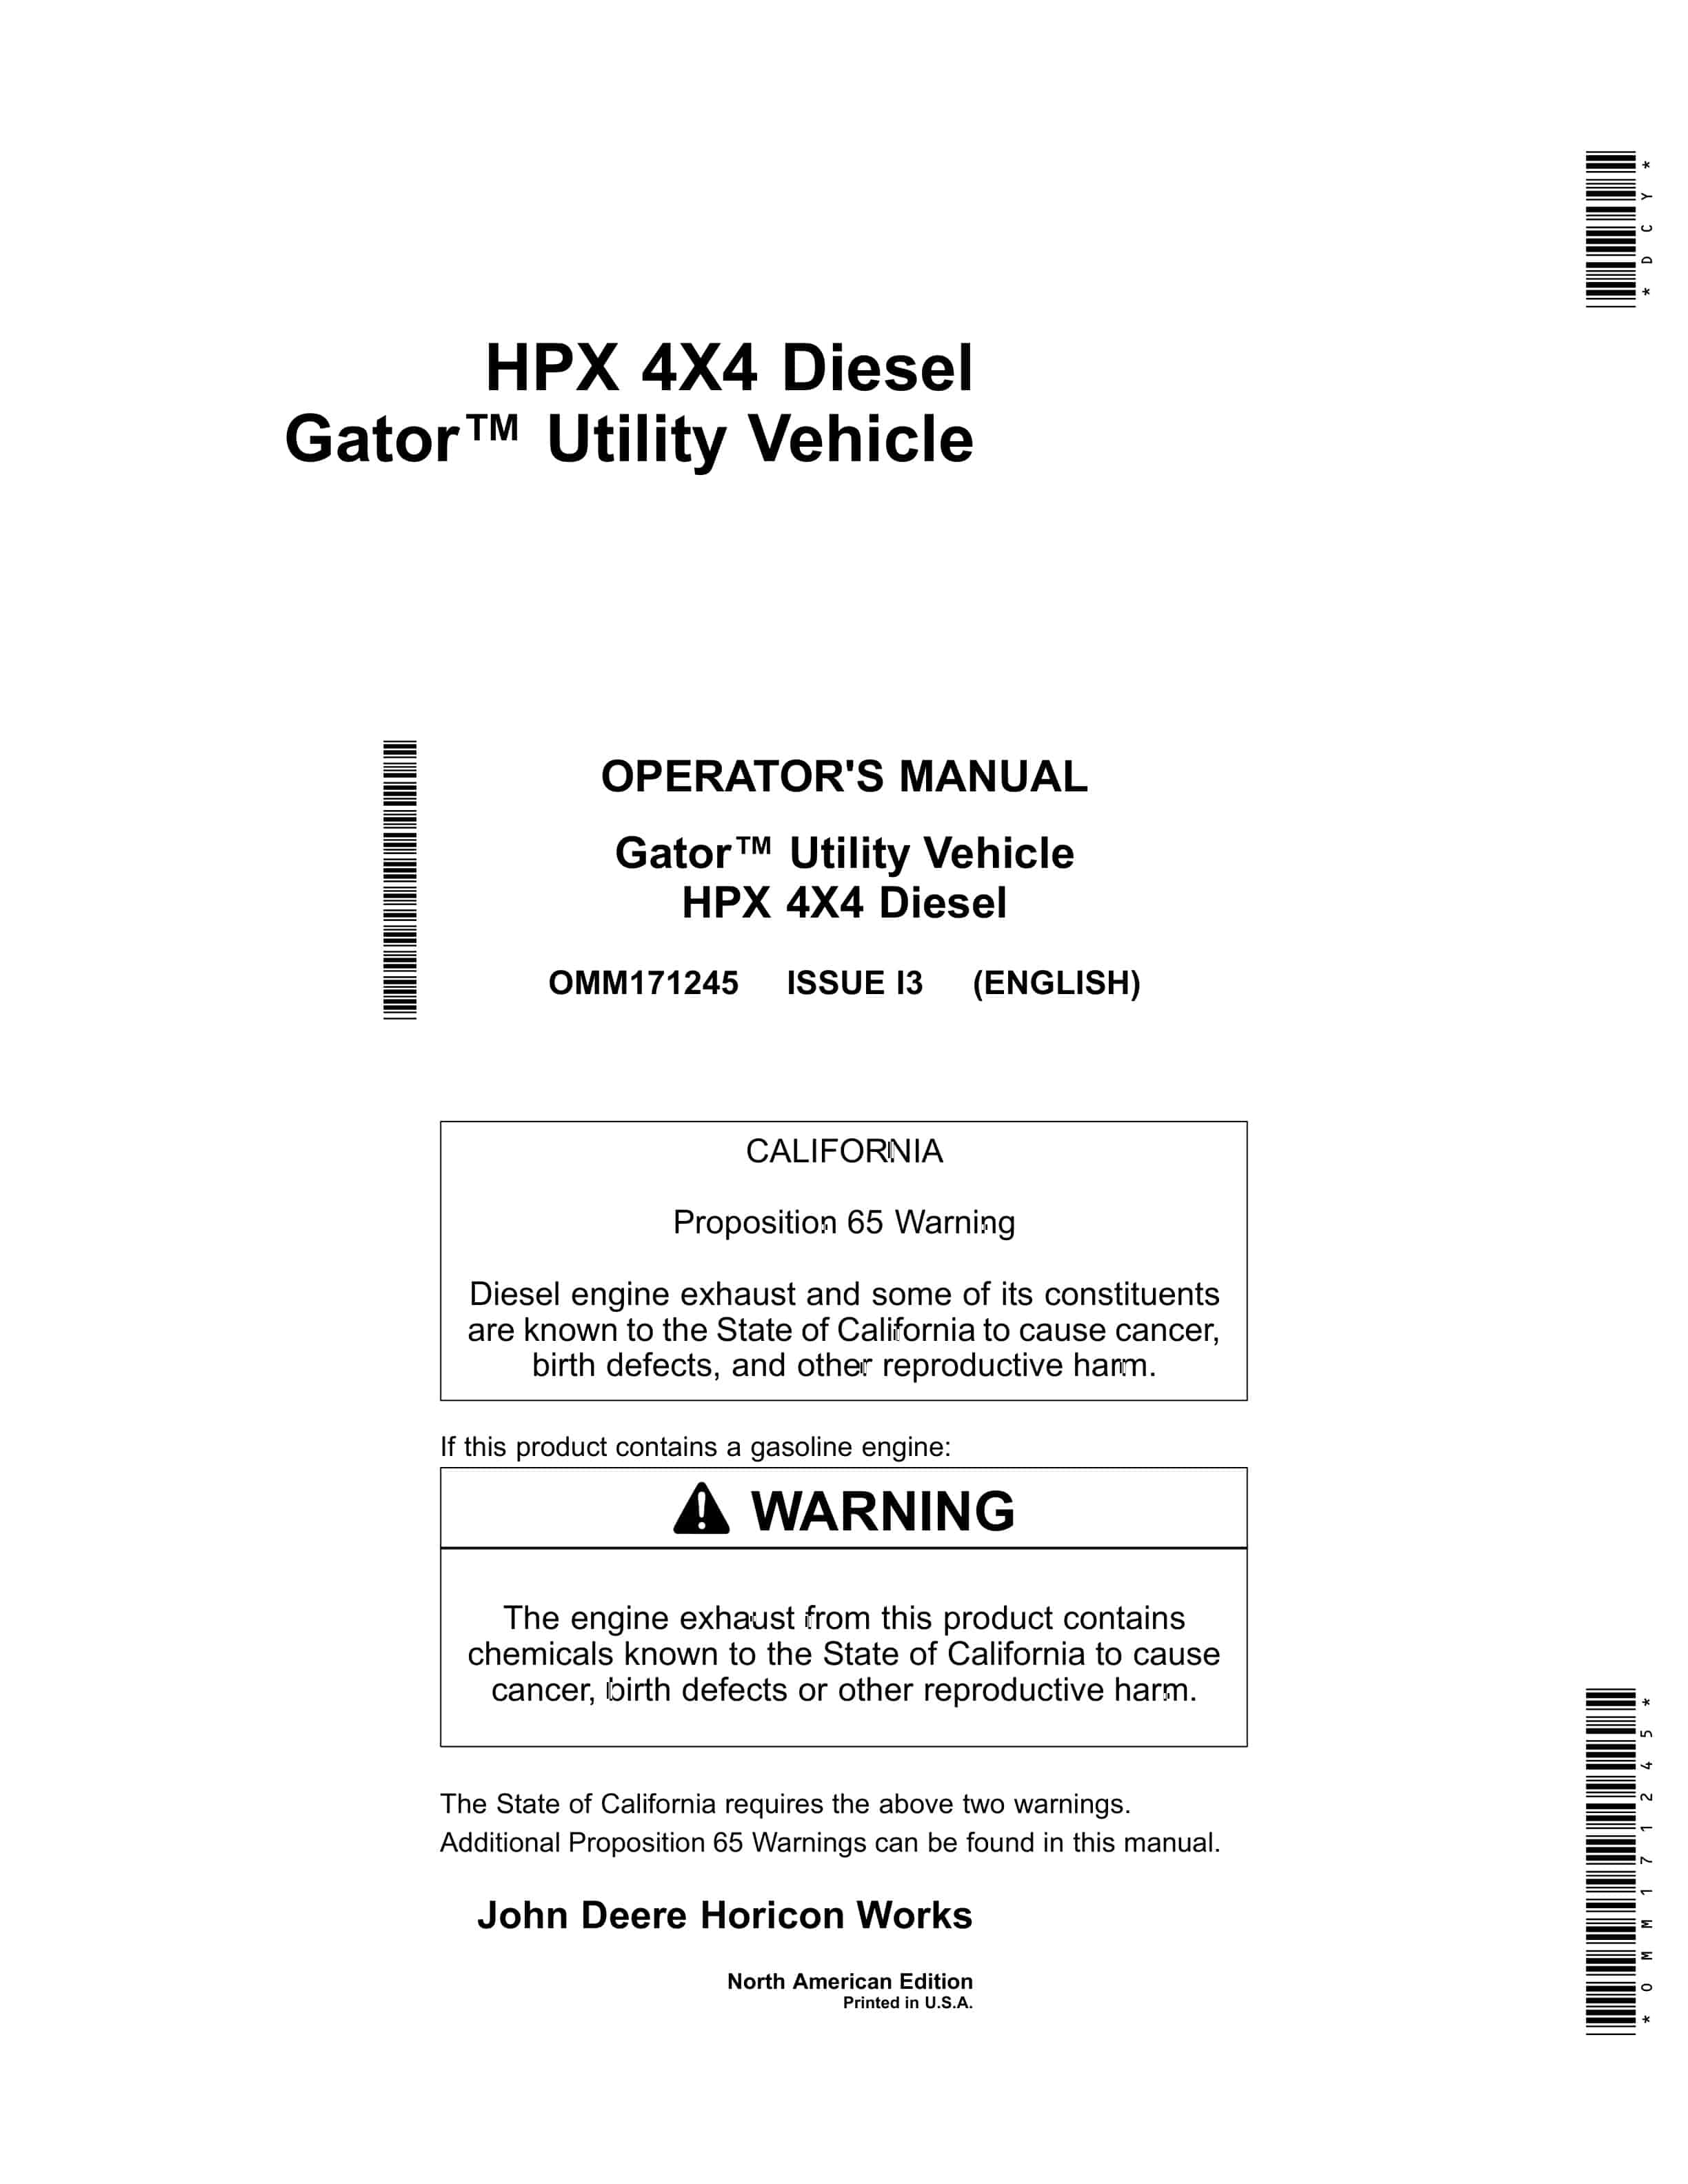 John Deere HPX 4X4 Diesel Gator Utility Vehicles Operator Manual OMM171245 1